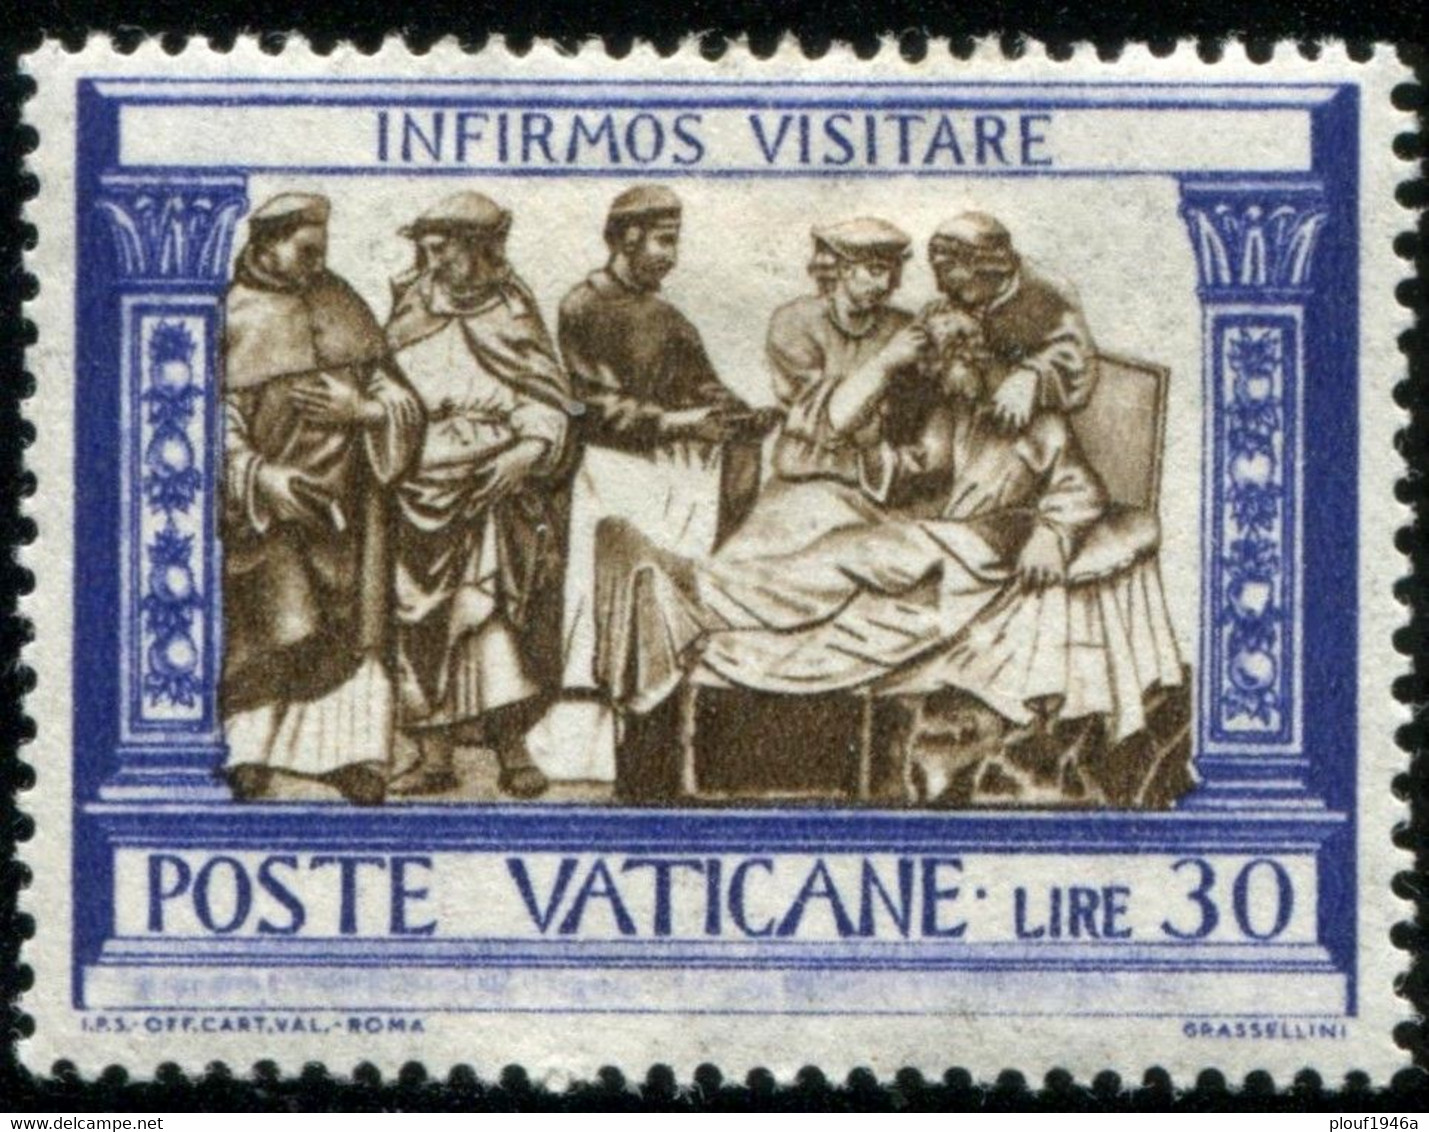 Pays : 495 (Vatican (Cité du))  Yvert et Tellier n° :   302-309 (*)